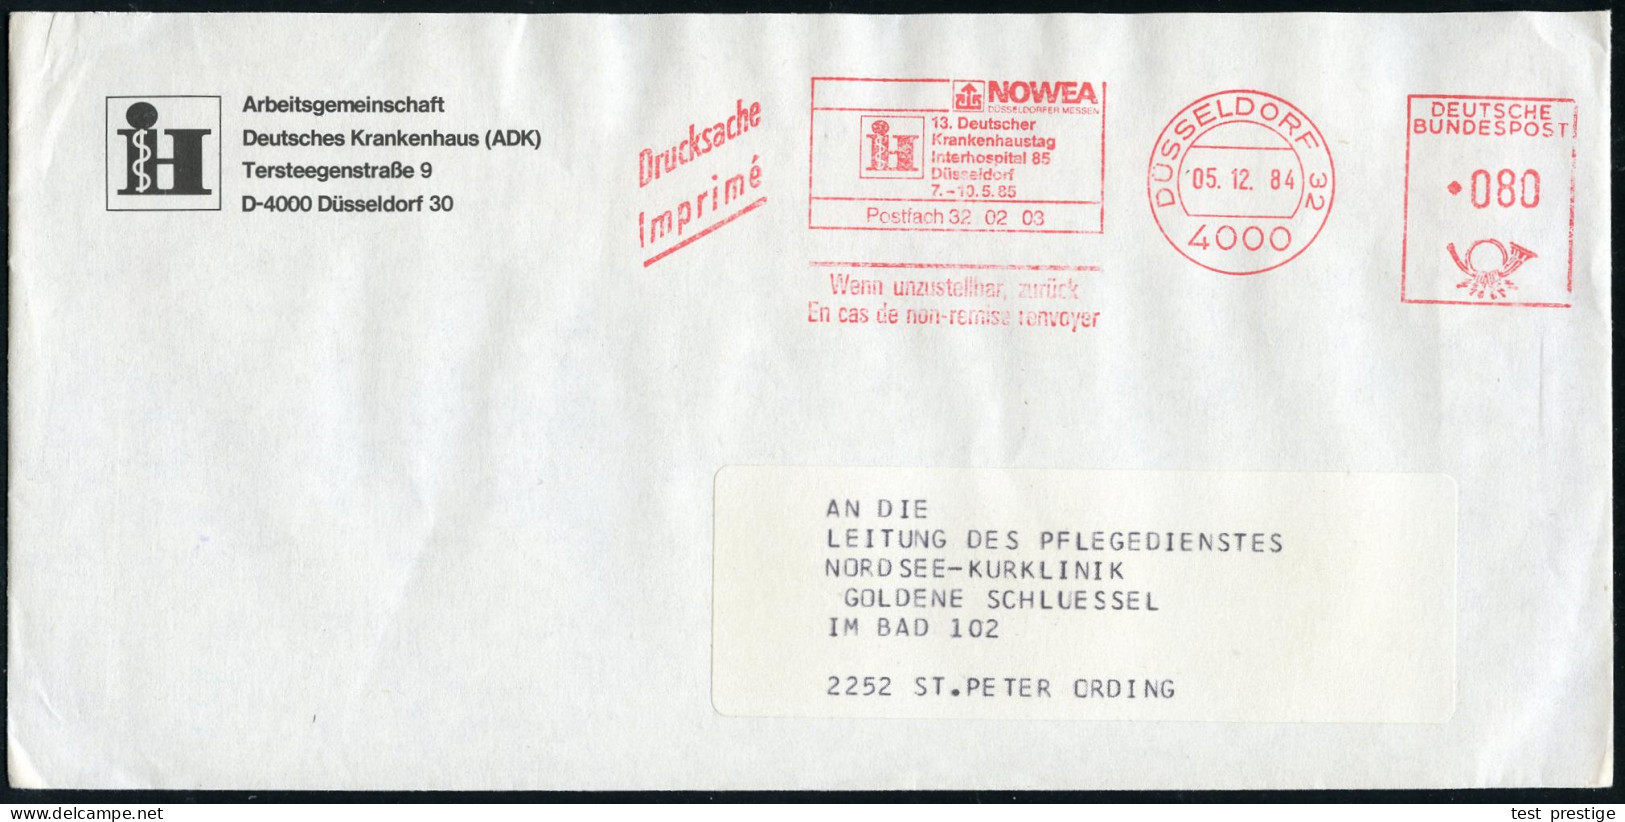 4000 DÜSSELDORF 32/ NOWEA/ !&sect;:Deutscher/ Krankenhaustag/ Interhospital 85.. 1984 (5.12.) AFS (Logo) Auf Vordruck-Bf - Medizin